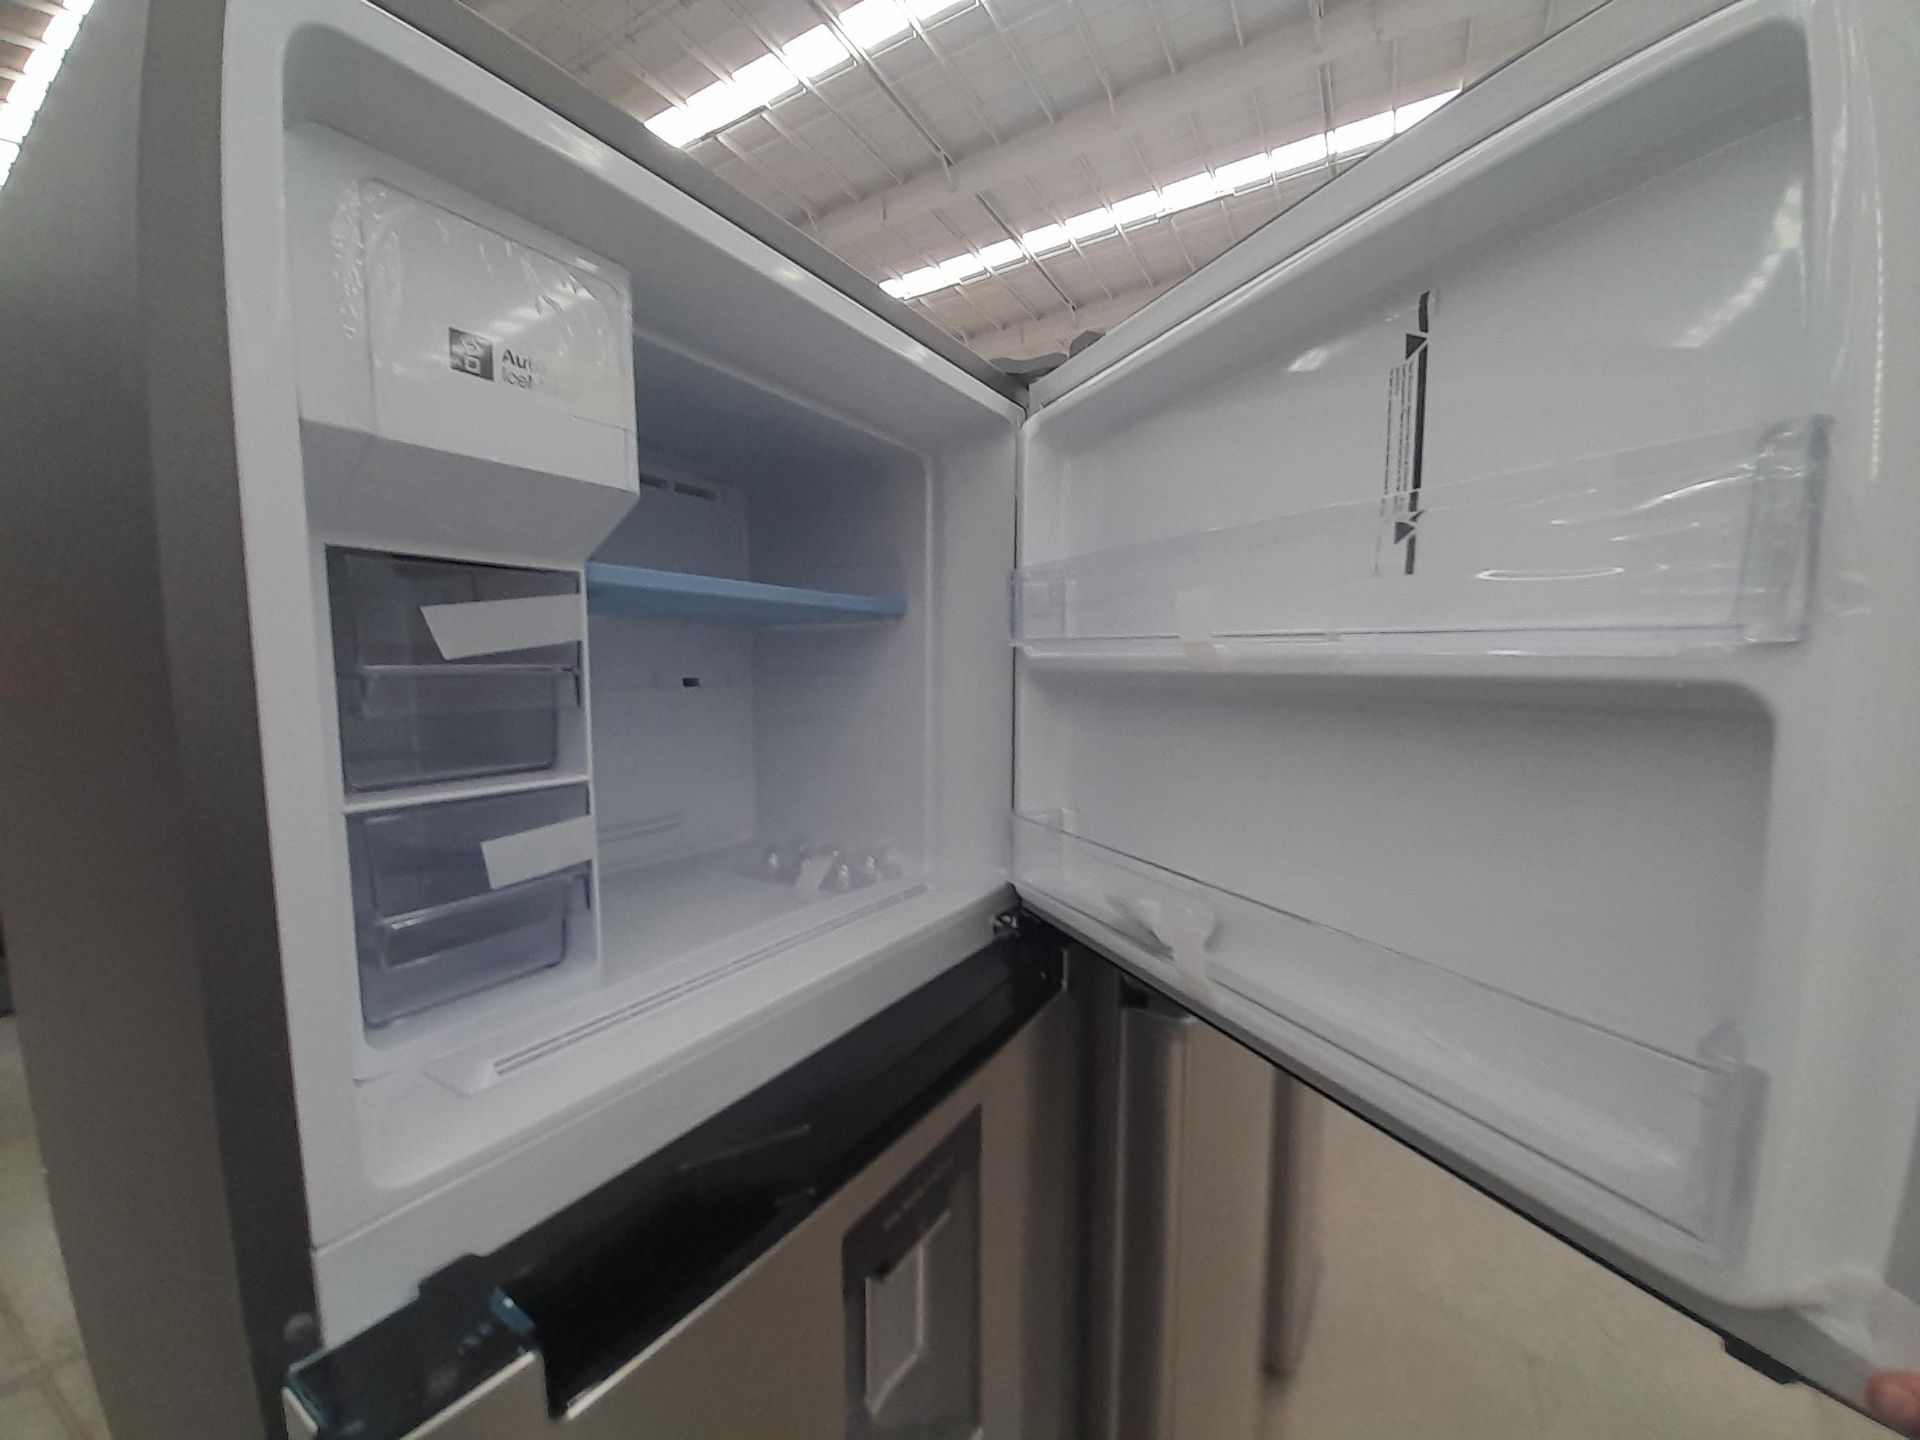 (NUEVO) Lote de 1 Refrigerador con dispensador de agua Marca SAMSUNG, Modelo RT38A5982SL, Serie 002 - Image 4 of 6